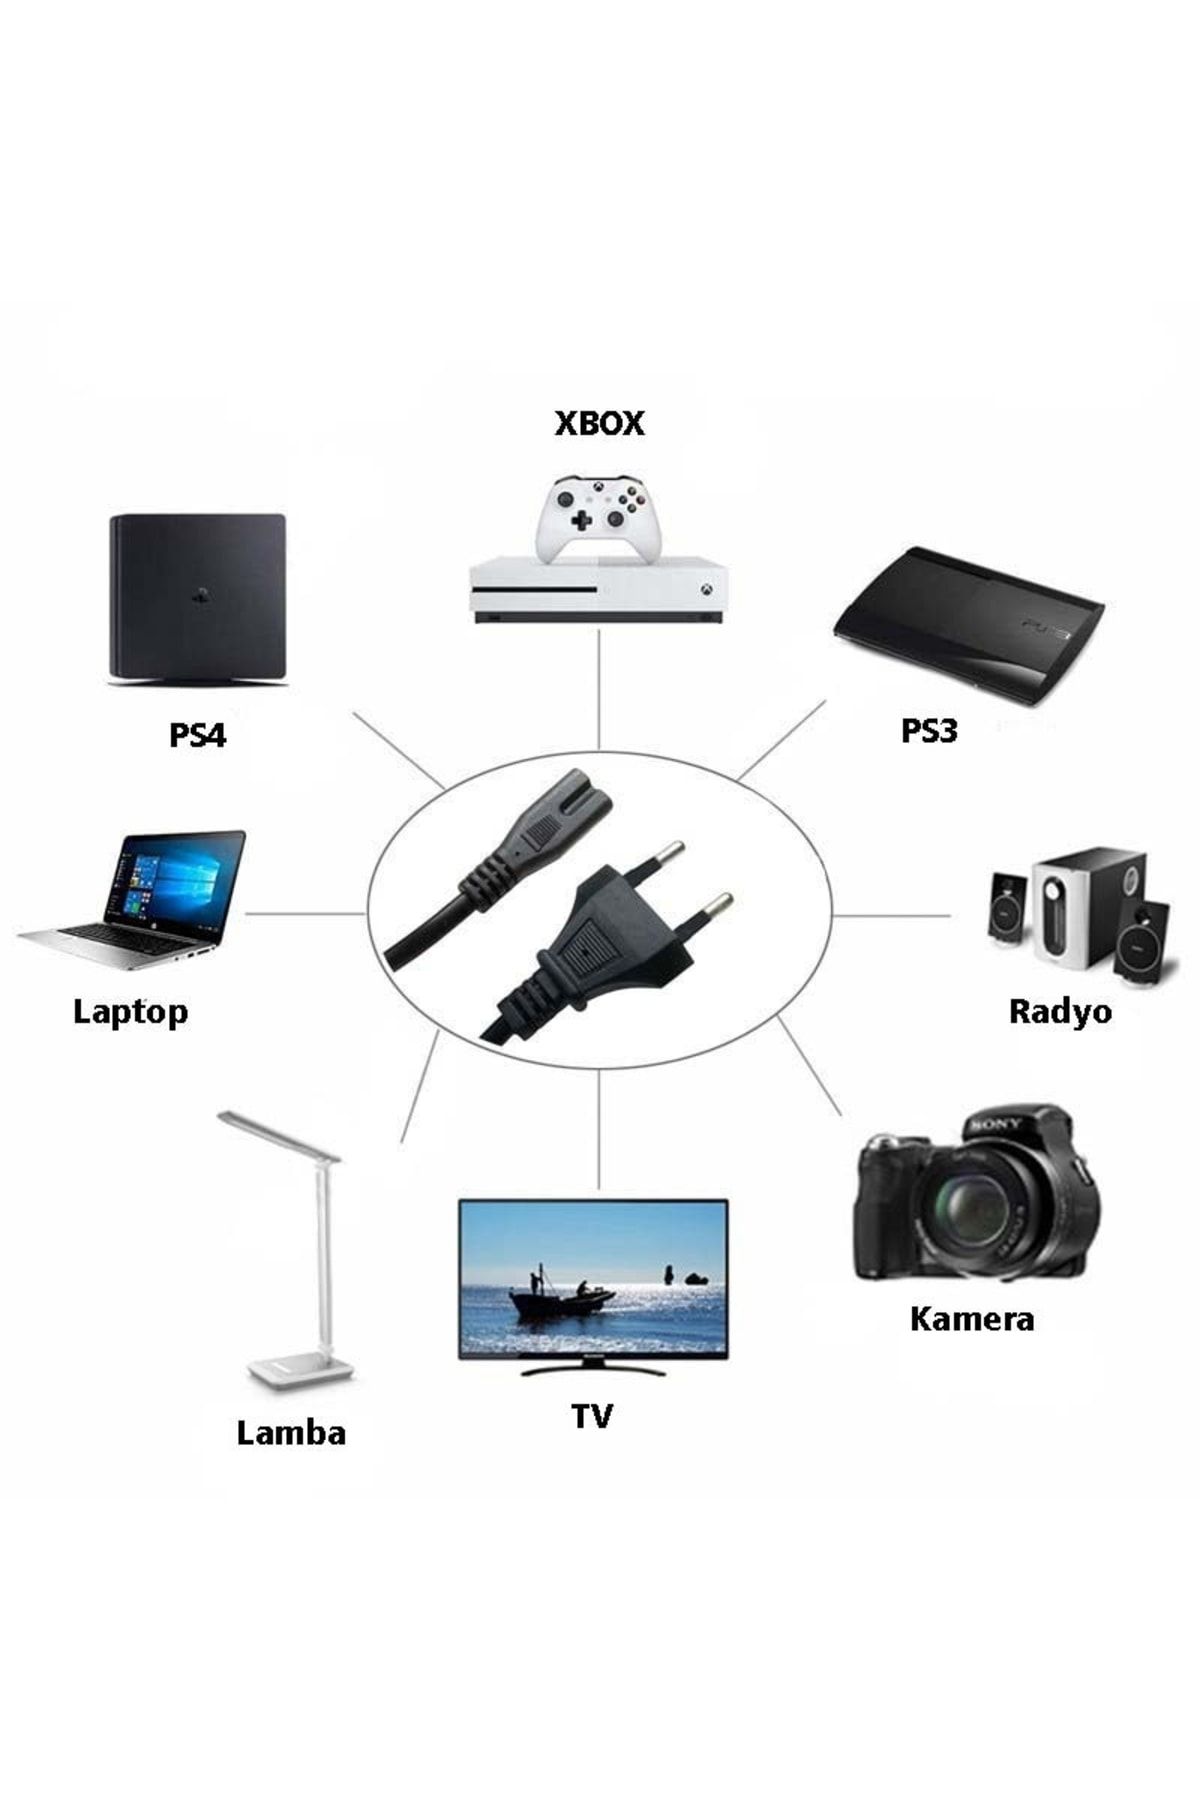 POPKONSOL Radyo Tv Laptop Teyp Ps3 Ps4 Xbox Lamba Kamera Adaptör Yazıcı Uyumlu Güç Kablosu 2 Pin Kablo